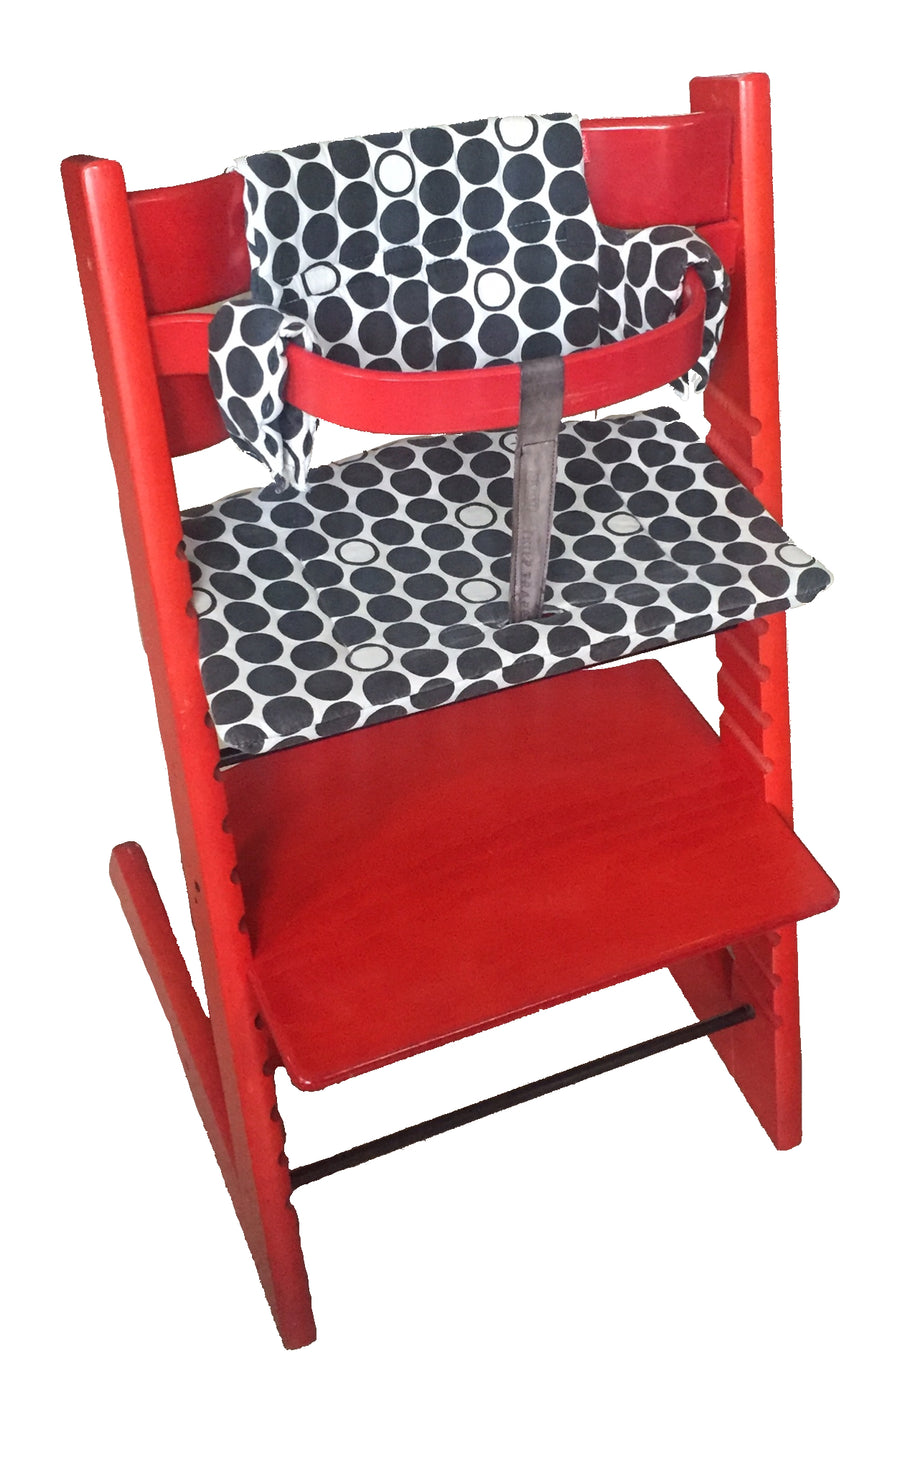 Stokke - Chaise tripp trapp rouge avec baby set et coussin (ancien modèle)